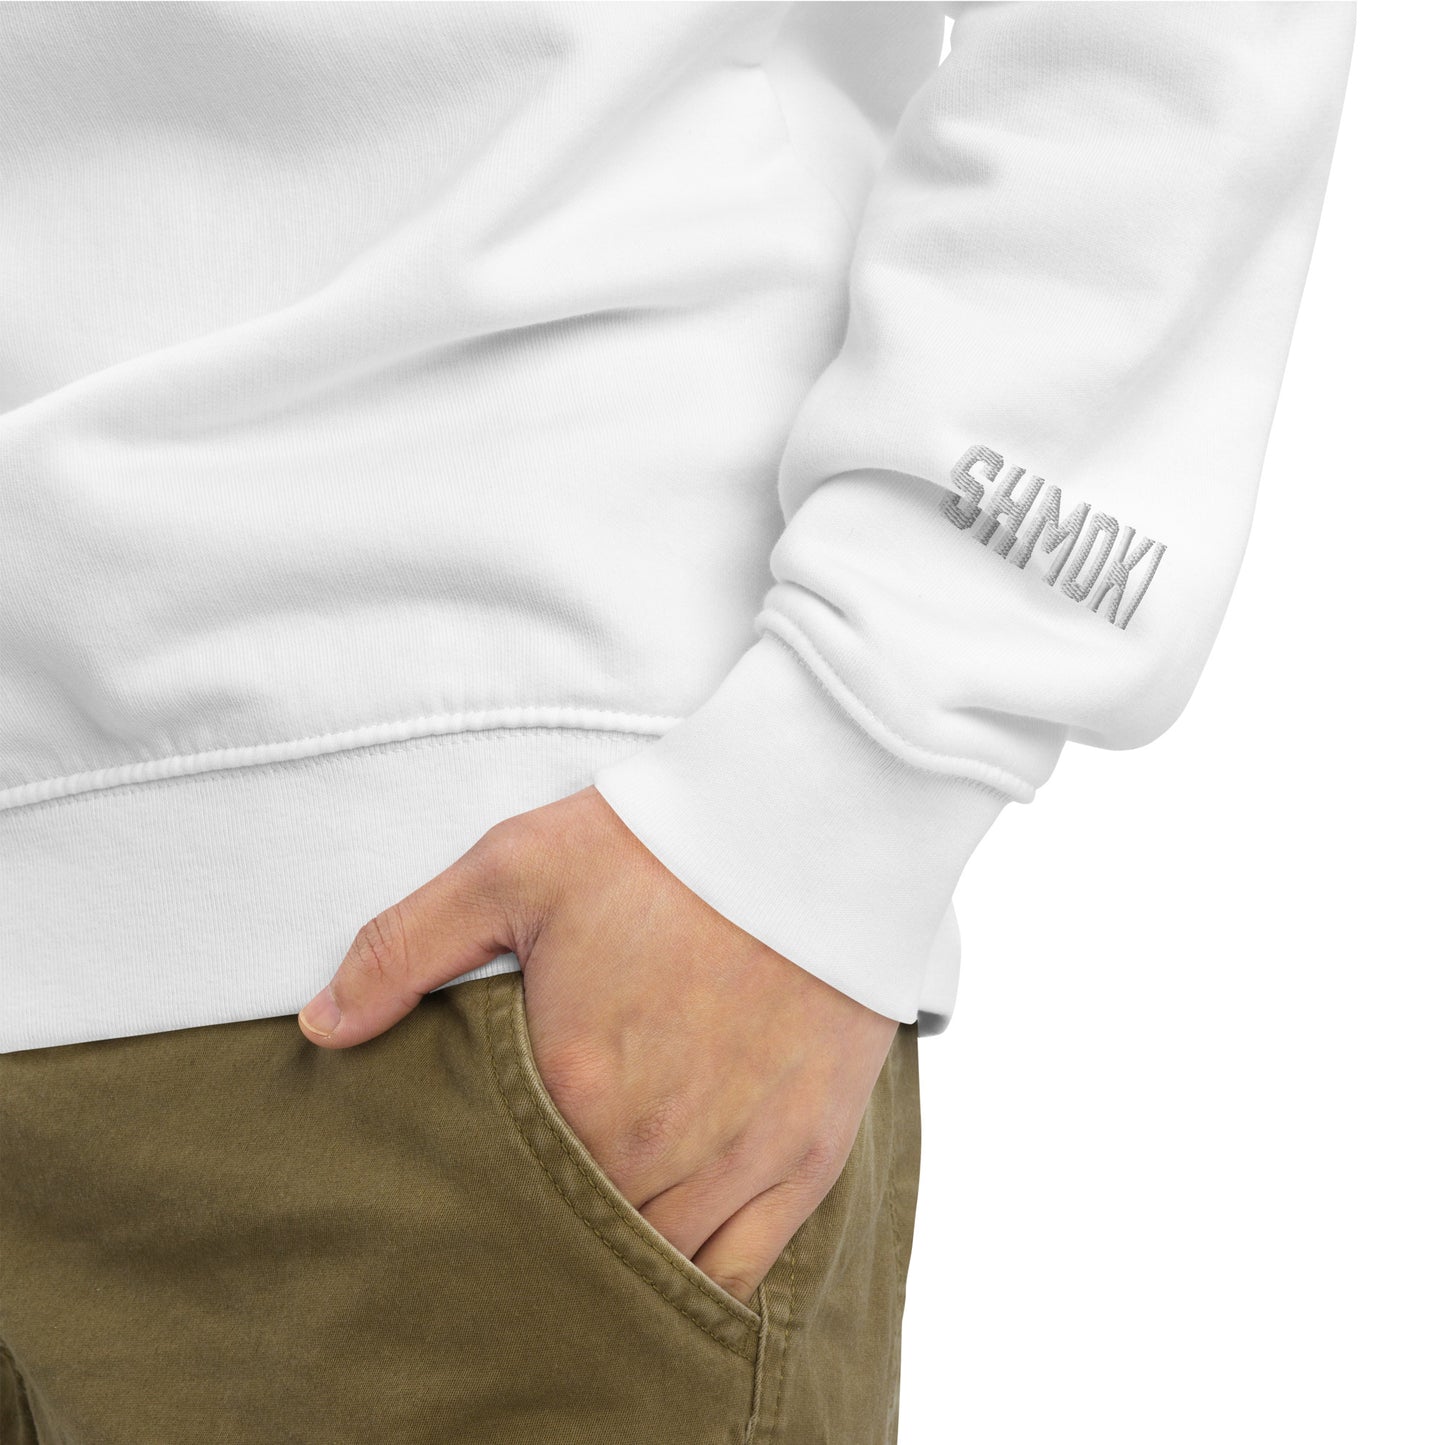 Eco S sweatshirt (Premium)